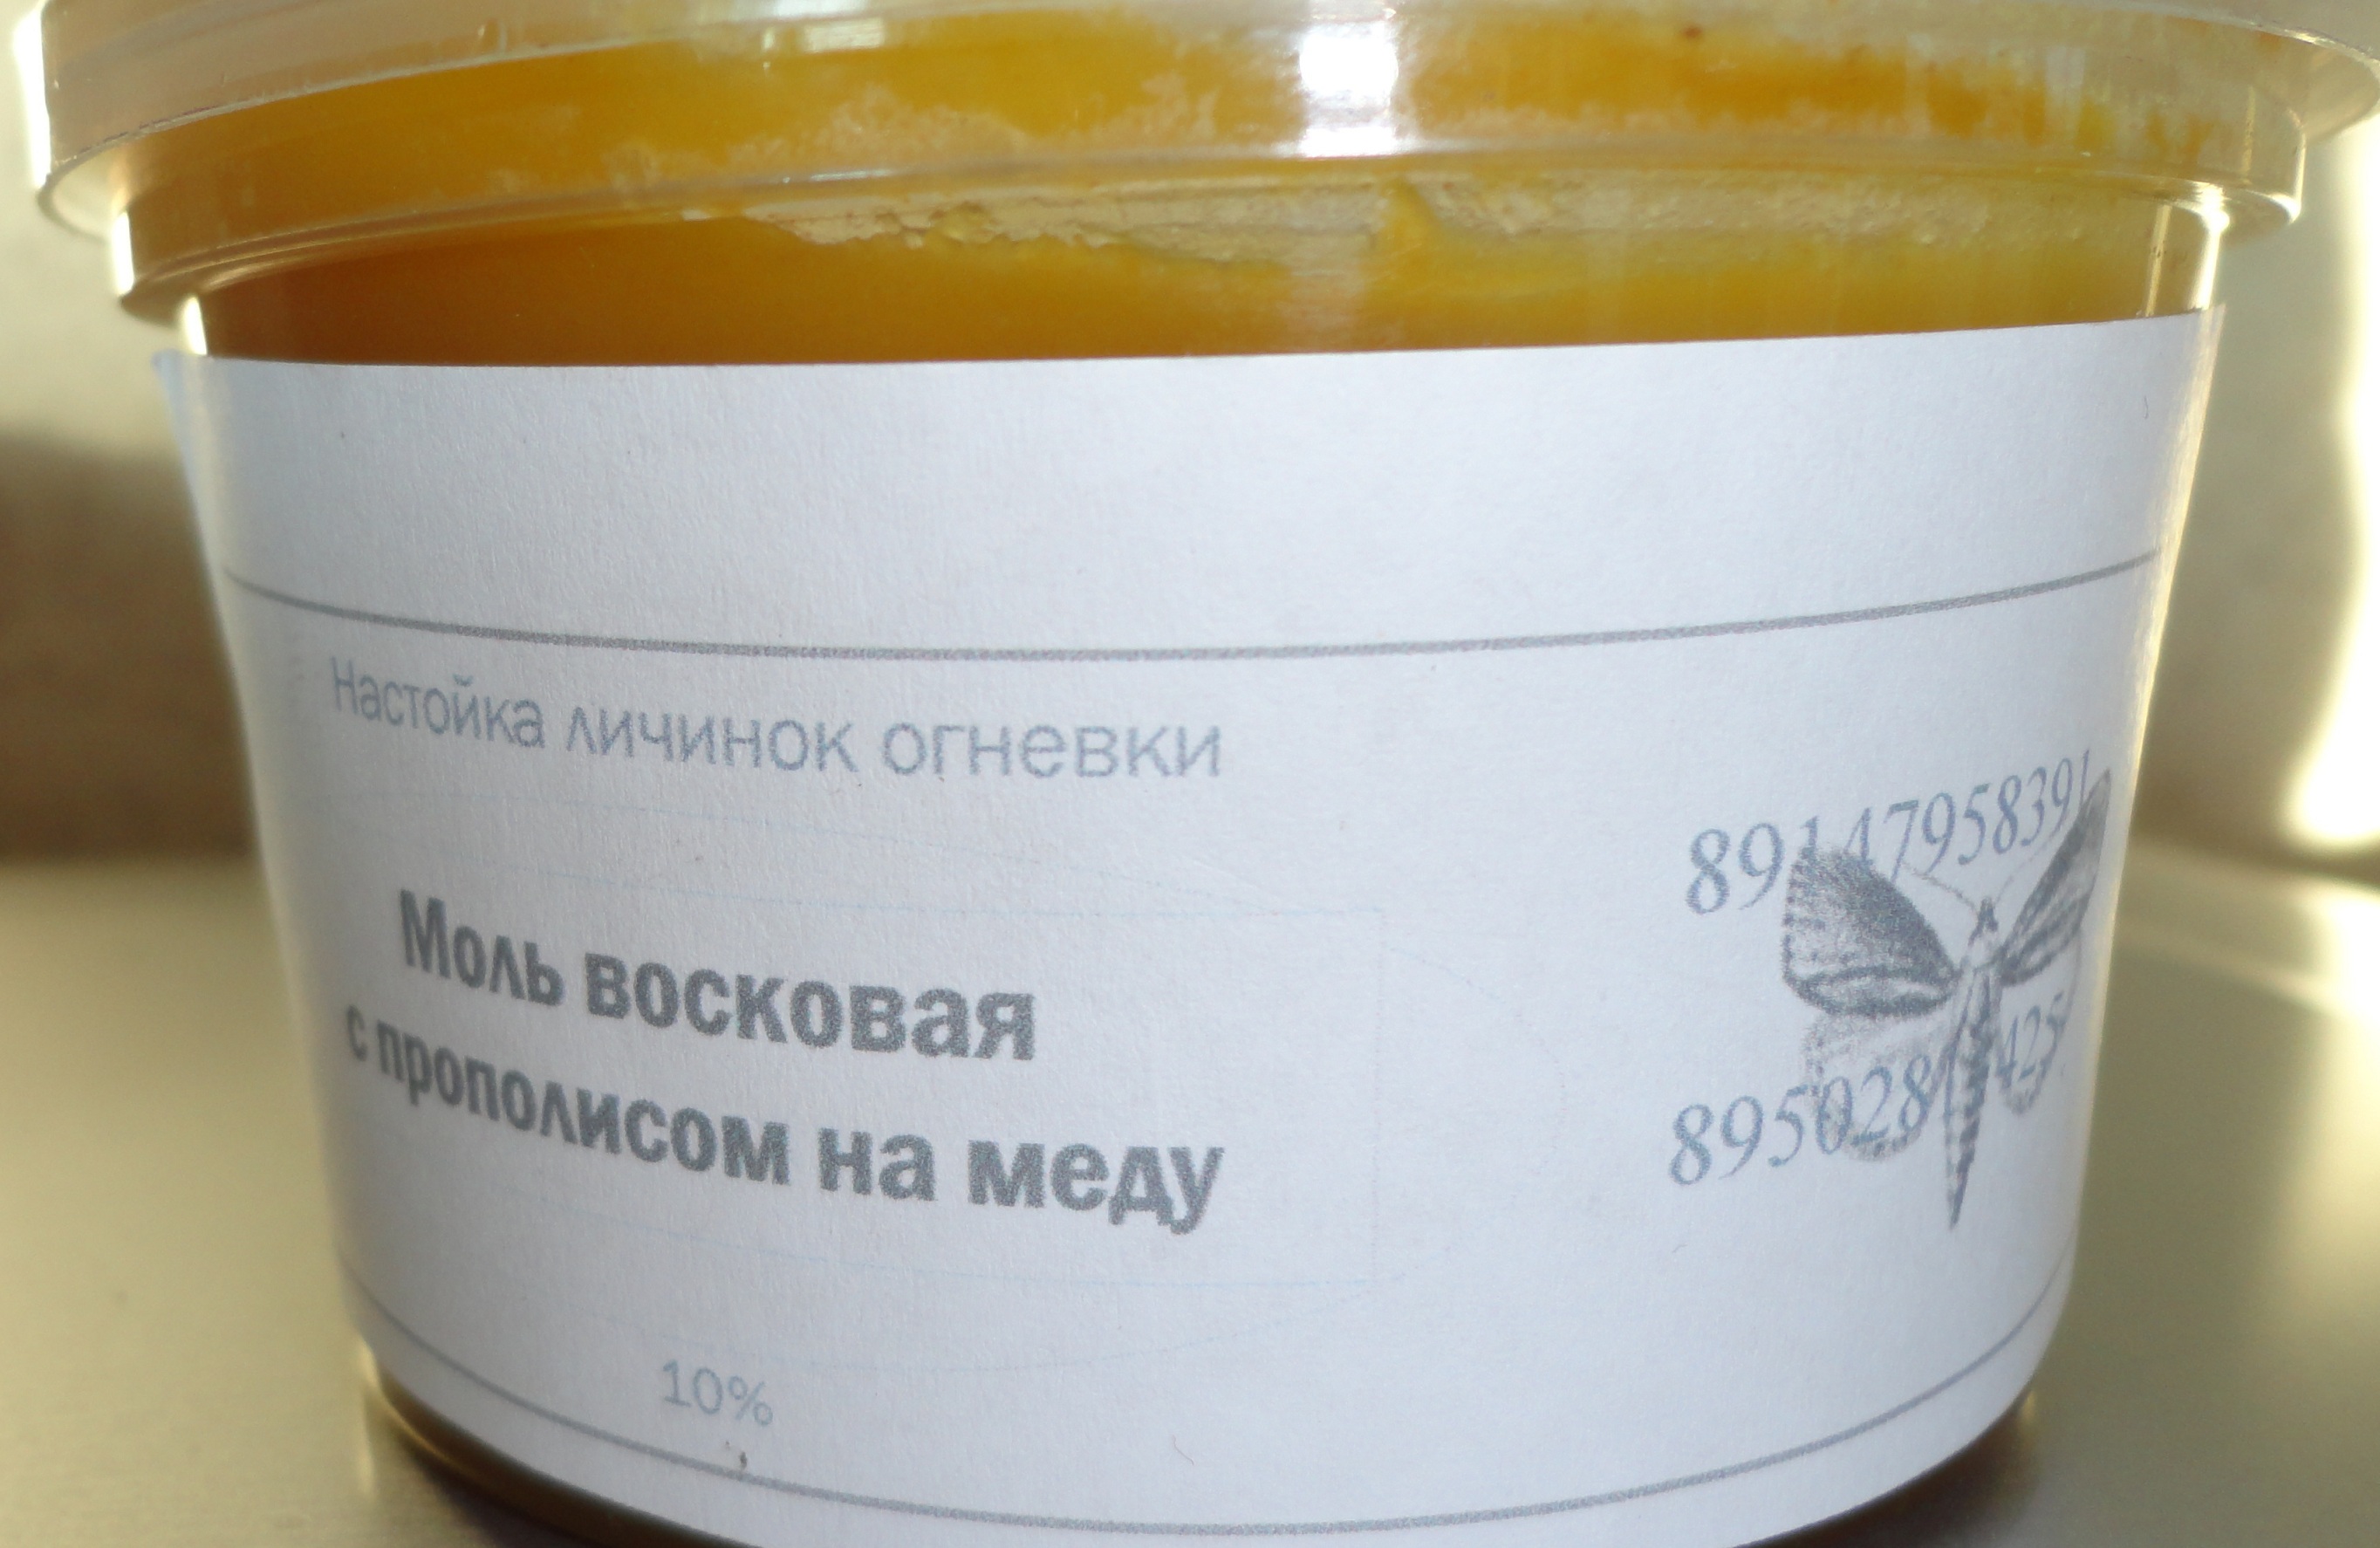 Моль восковая на меду с прополисом в городе Владивосток, фото 1, телефон продавца: +7 (914) 795-83-90